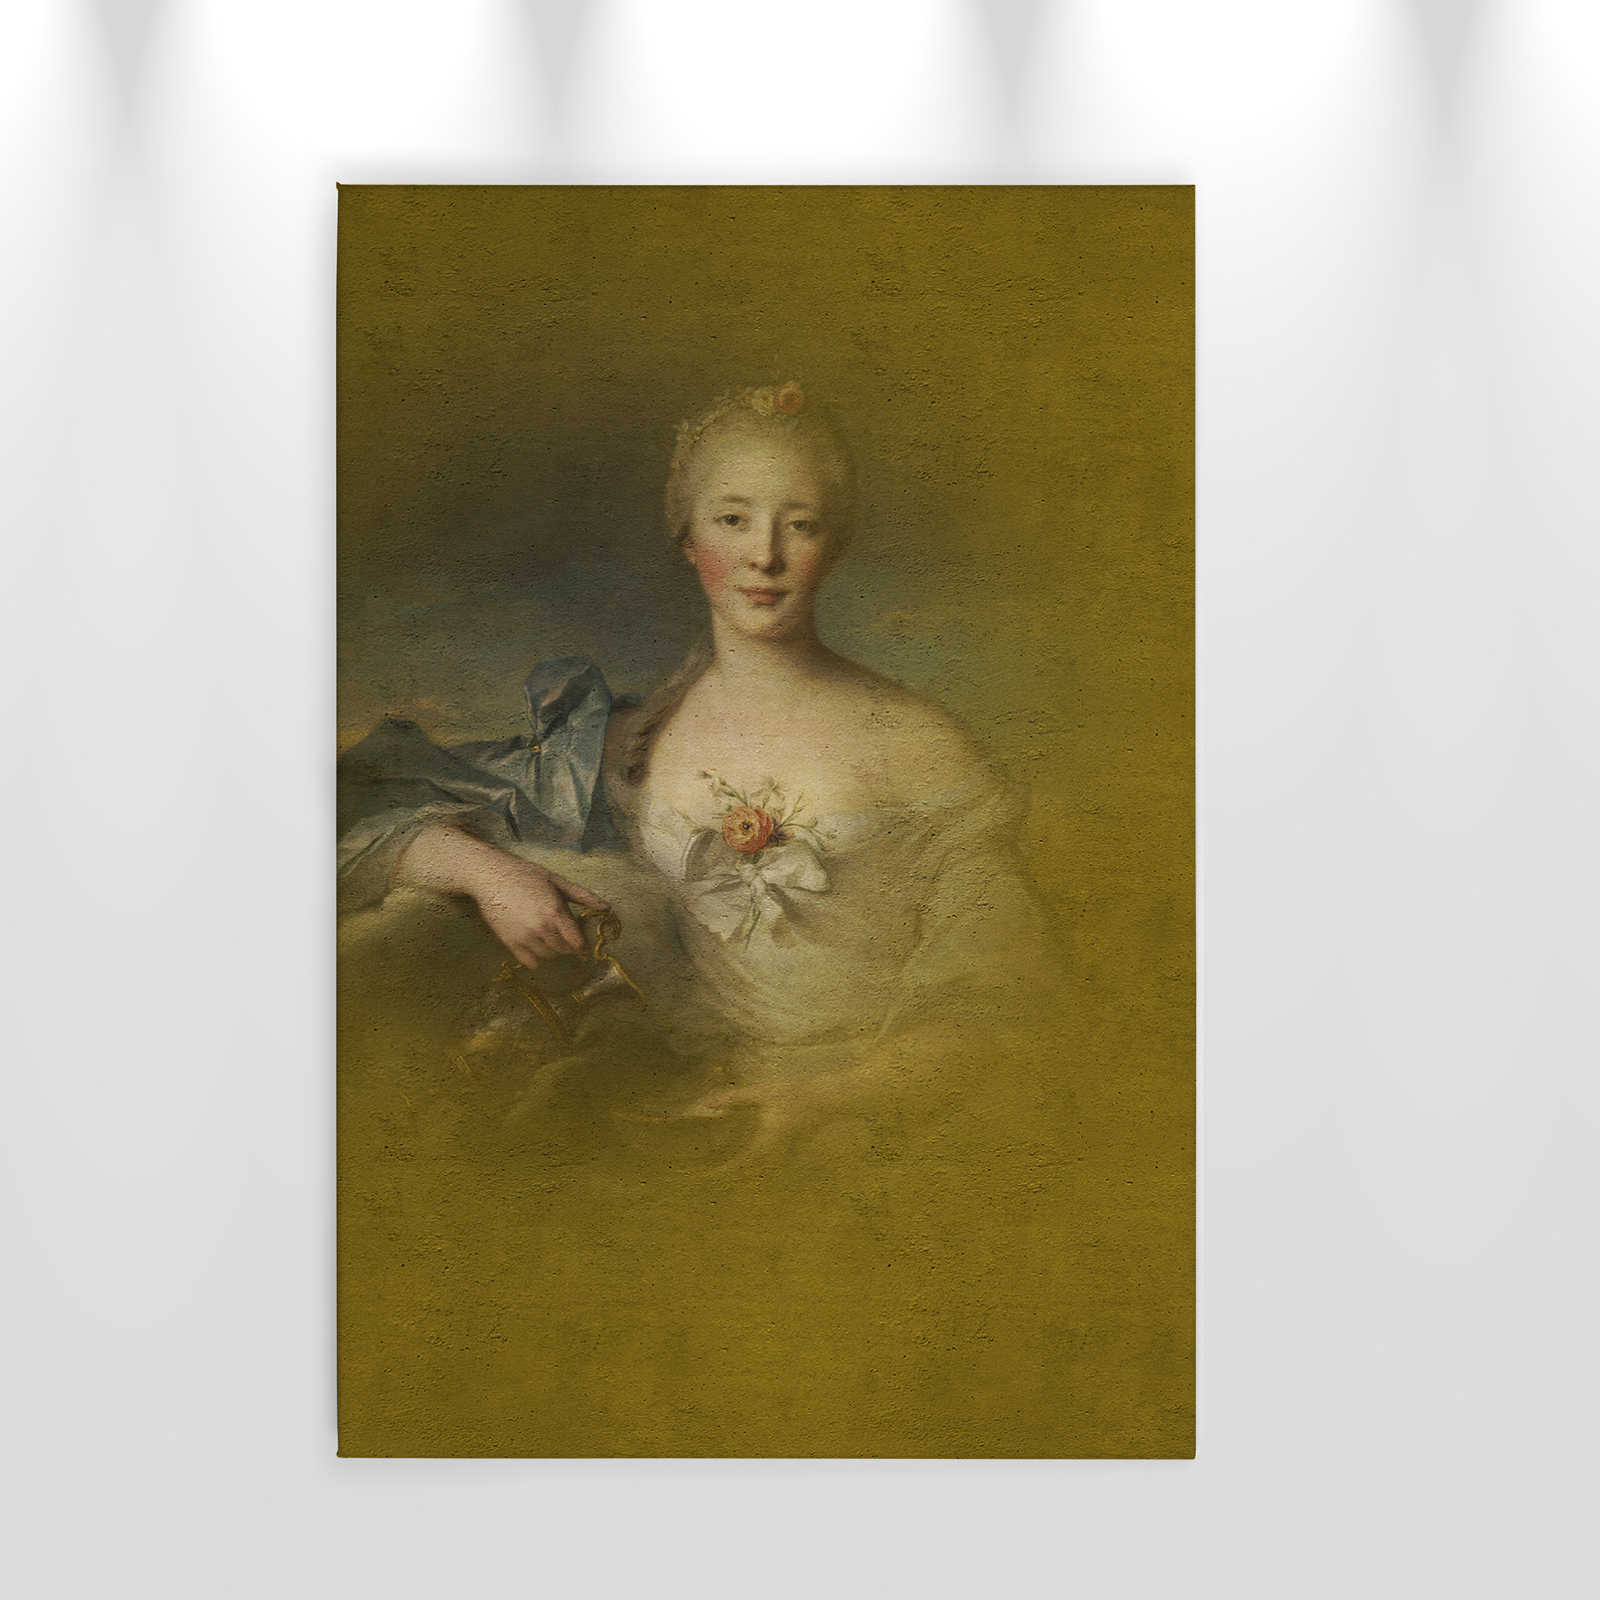             Leinwandbild klassisches Portrait junge Dame – 0,60 m x 0,90 m
        